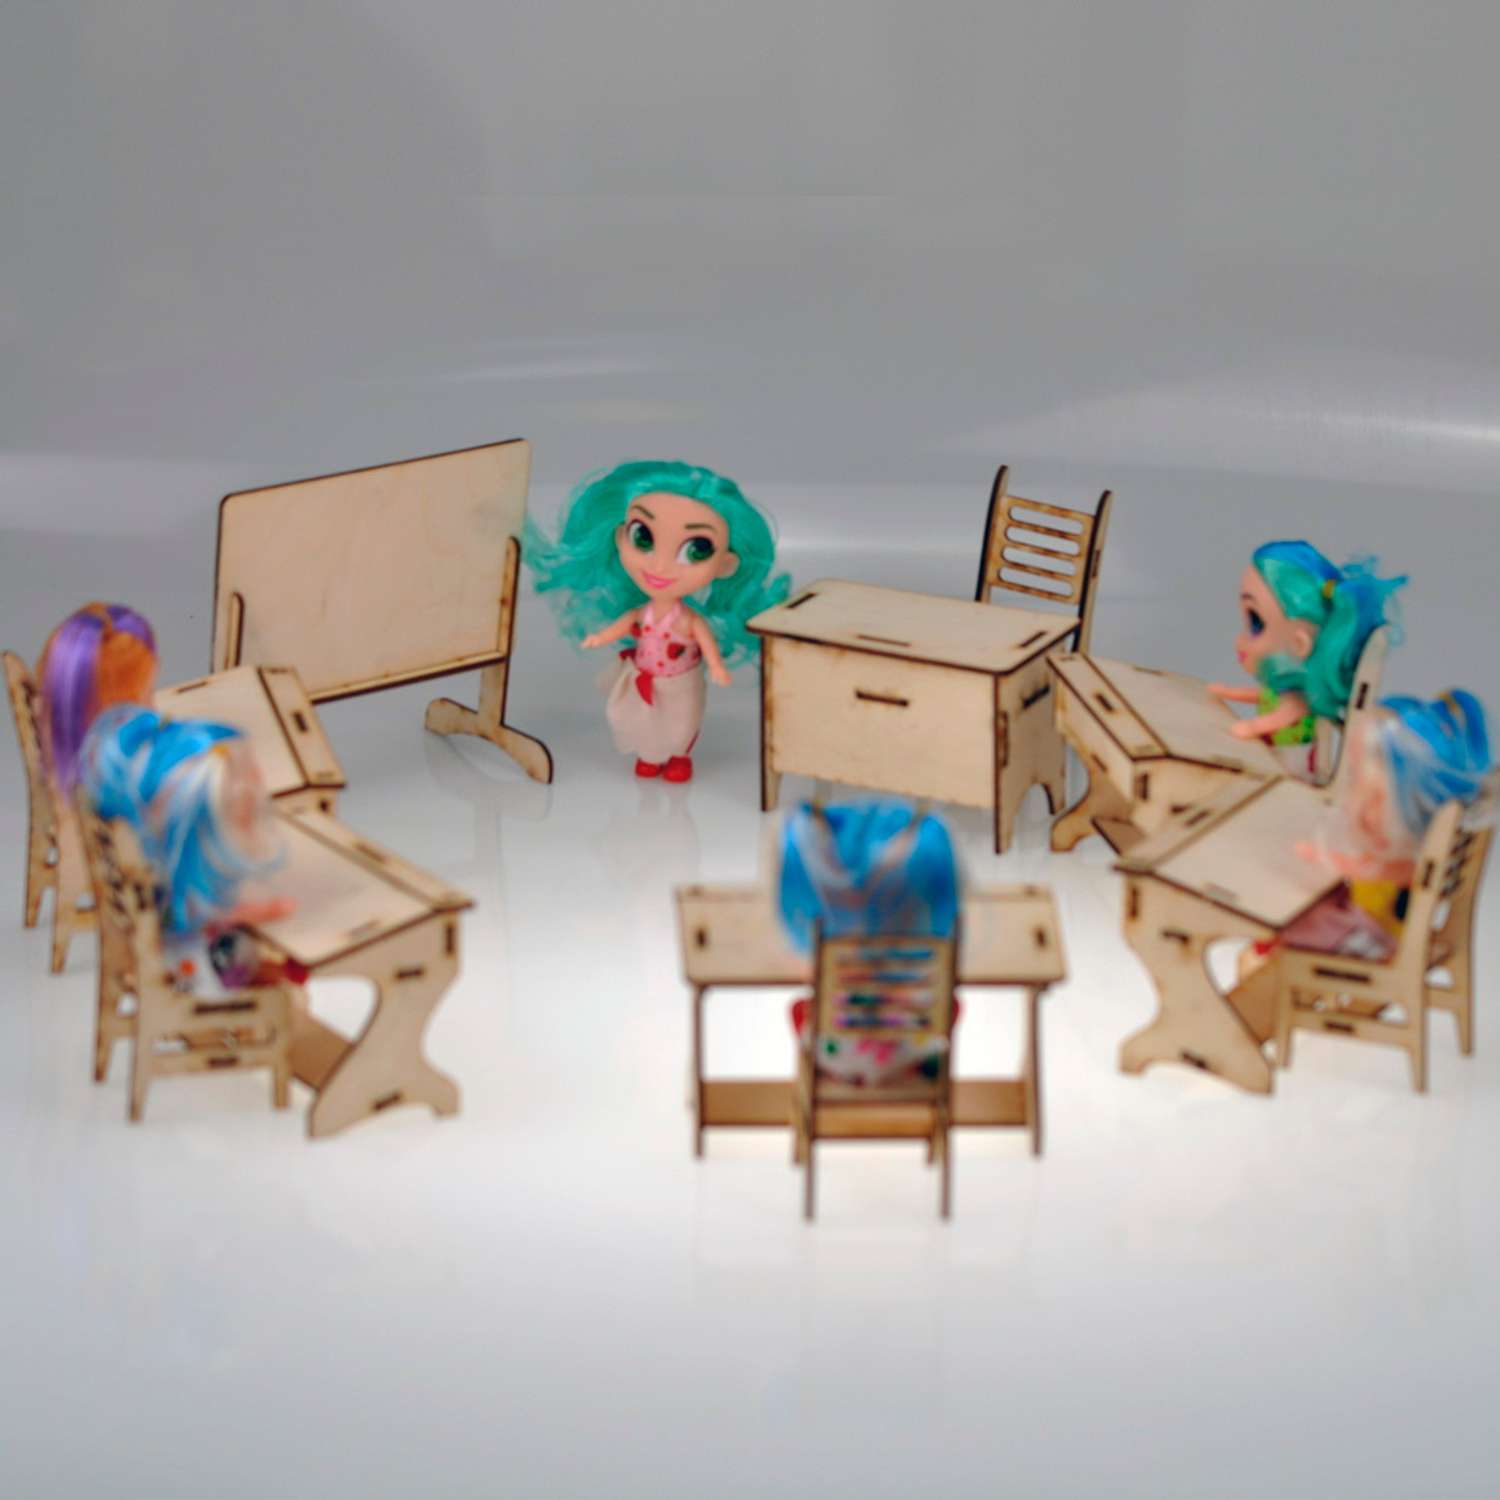 Игровой деревянный класс Amazwood 5 парт- учительский стол - доска - 6 стульев - 6 кукол AW1006 - фото 13